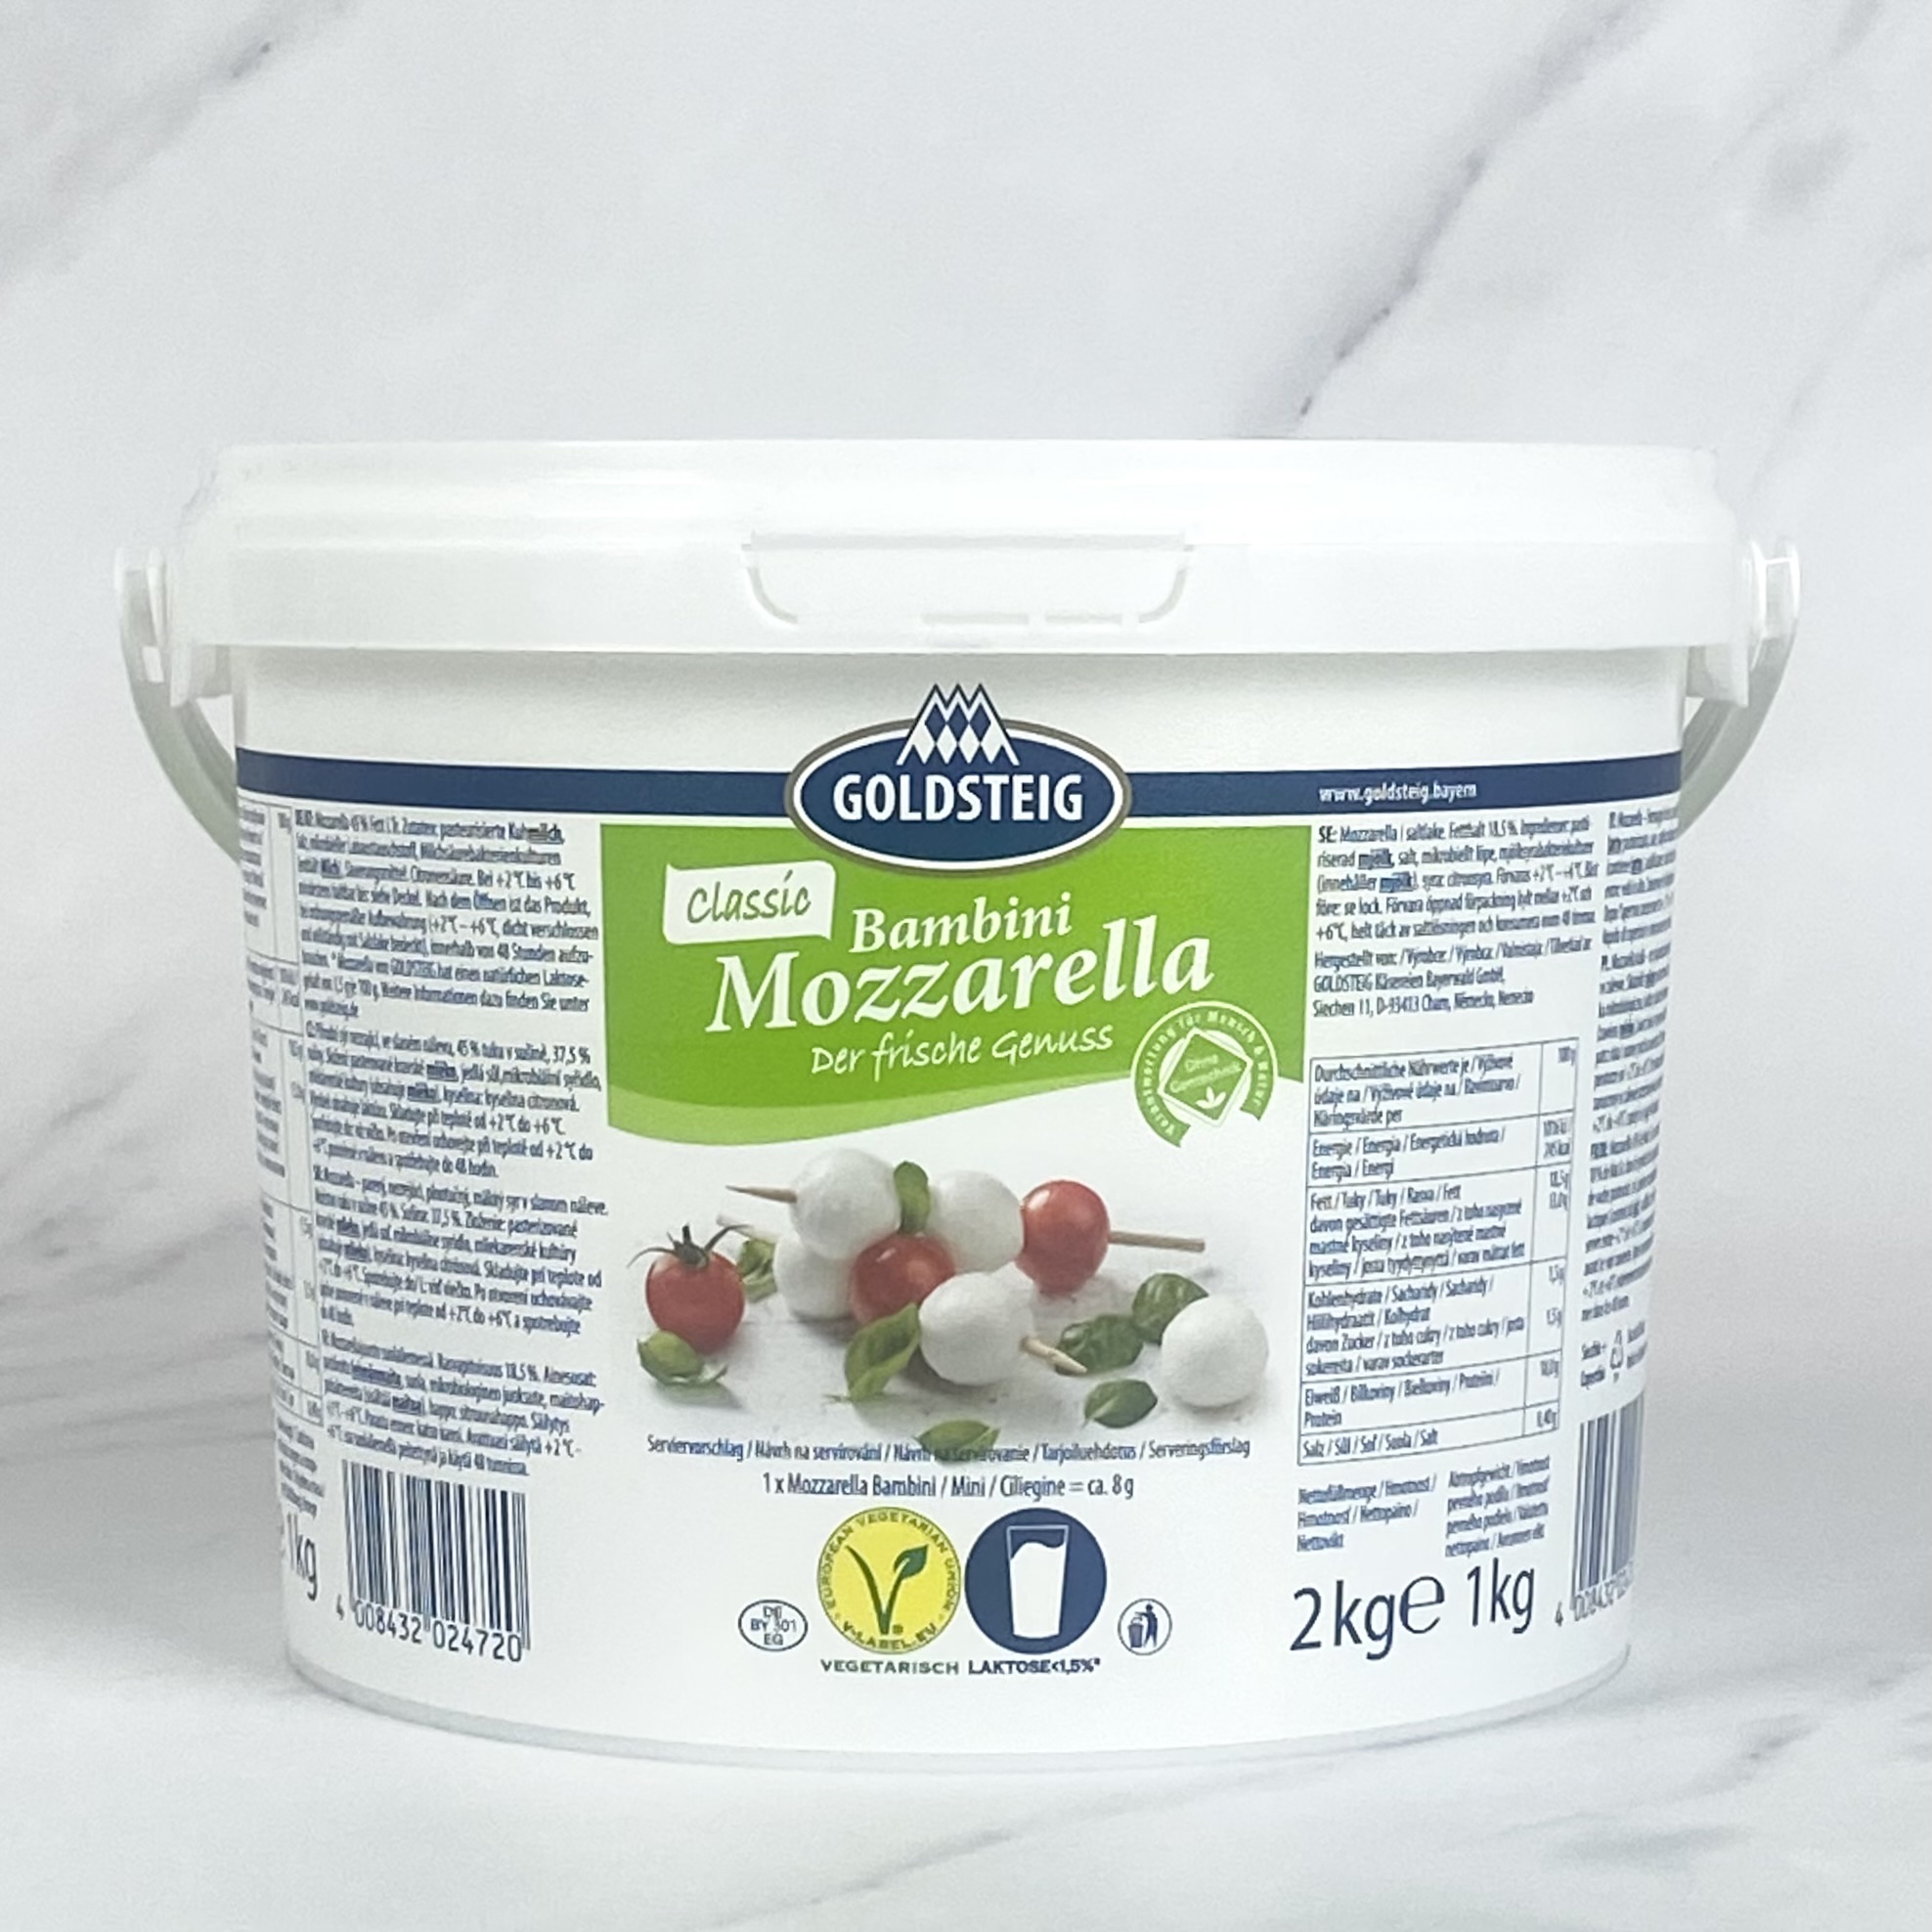 Mozzarella Mini Pearls (Bocconcini) – 1kg